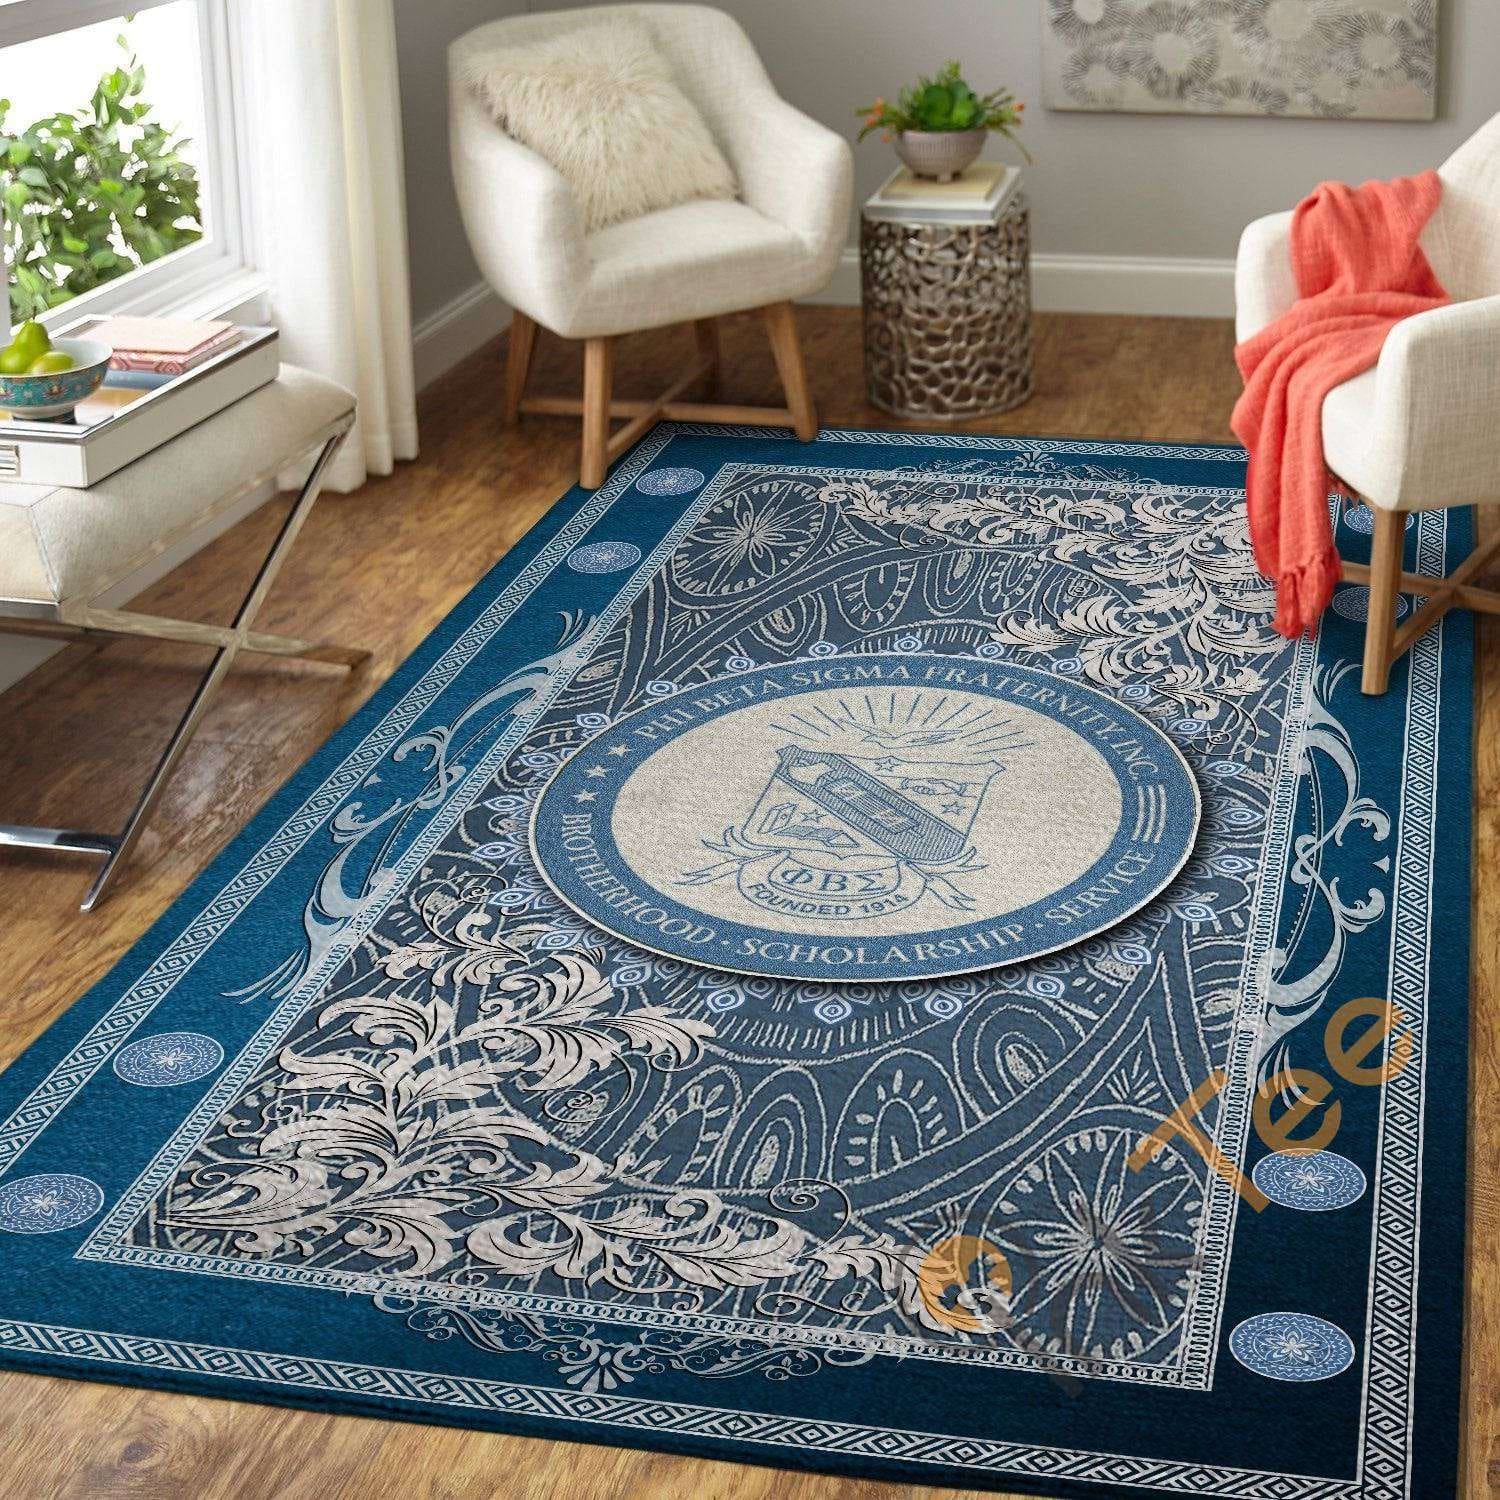 Phi Beta Sigma Greek Soft Livingroom Carpet Highlight For Home Beautiful Rug